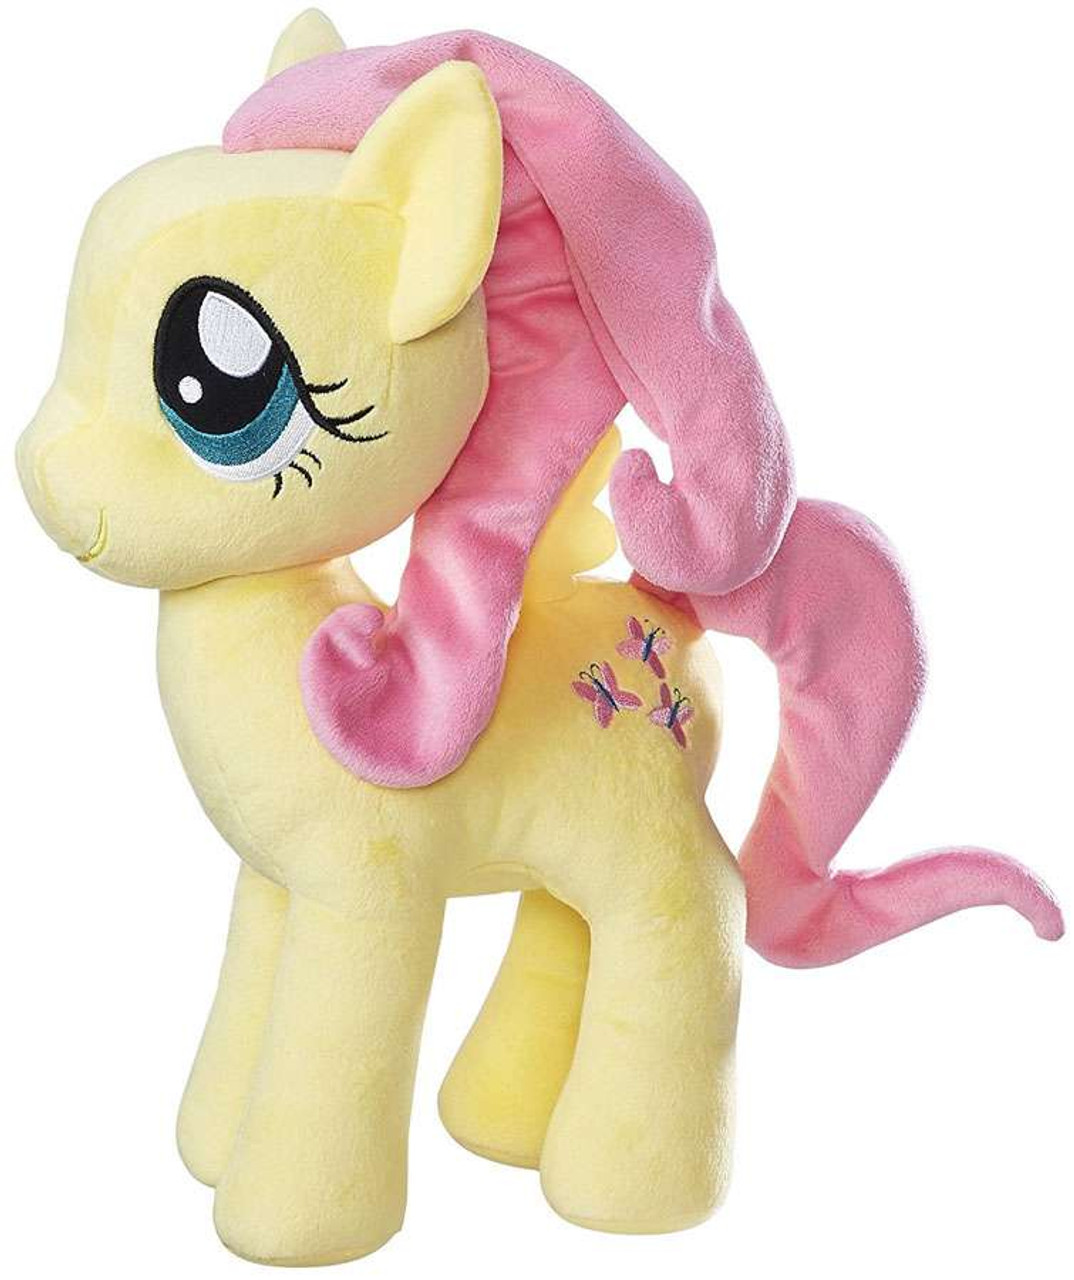 pony stuffed toy